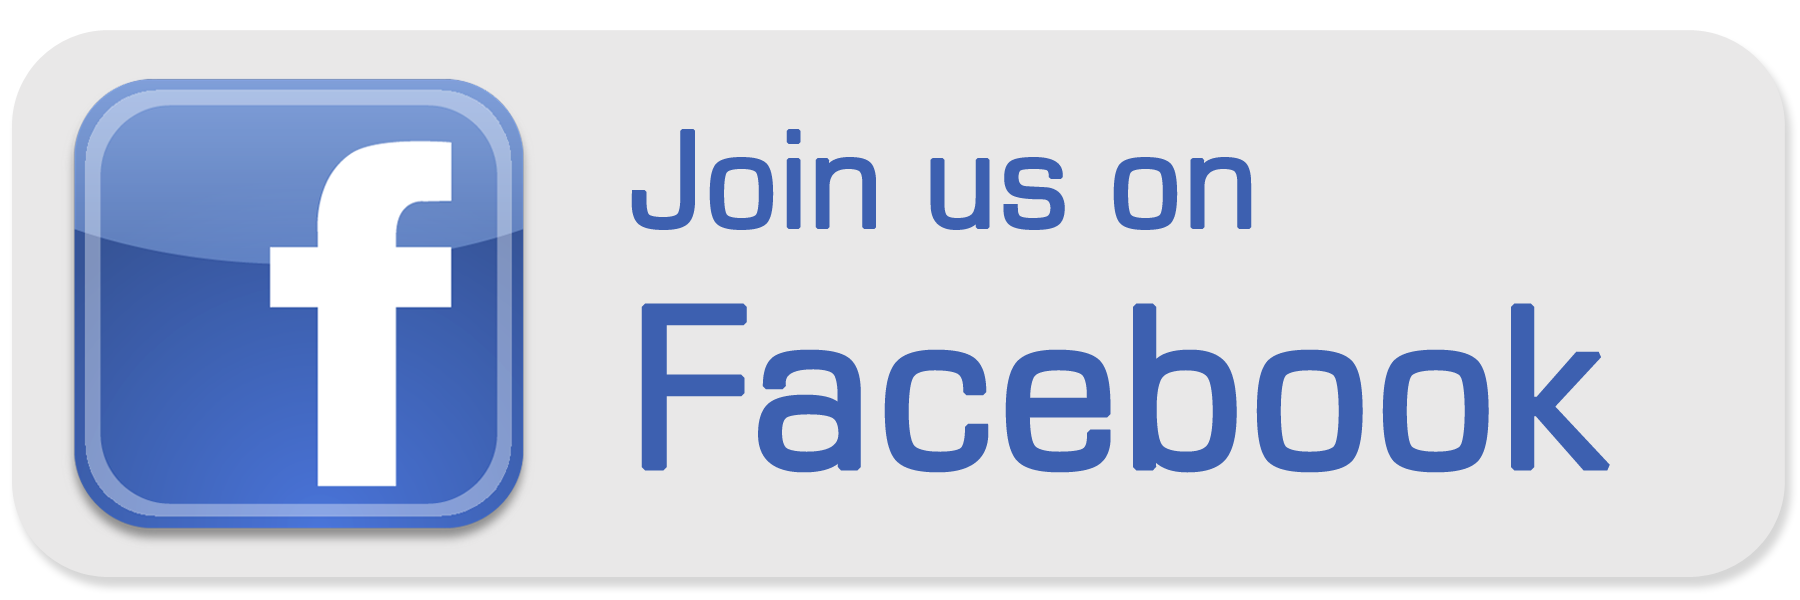 Visit us on FaceBook